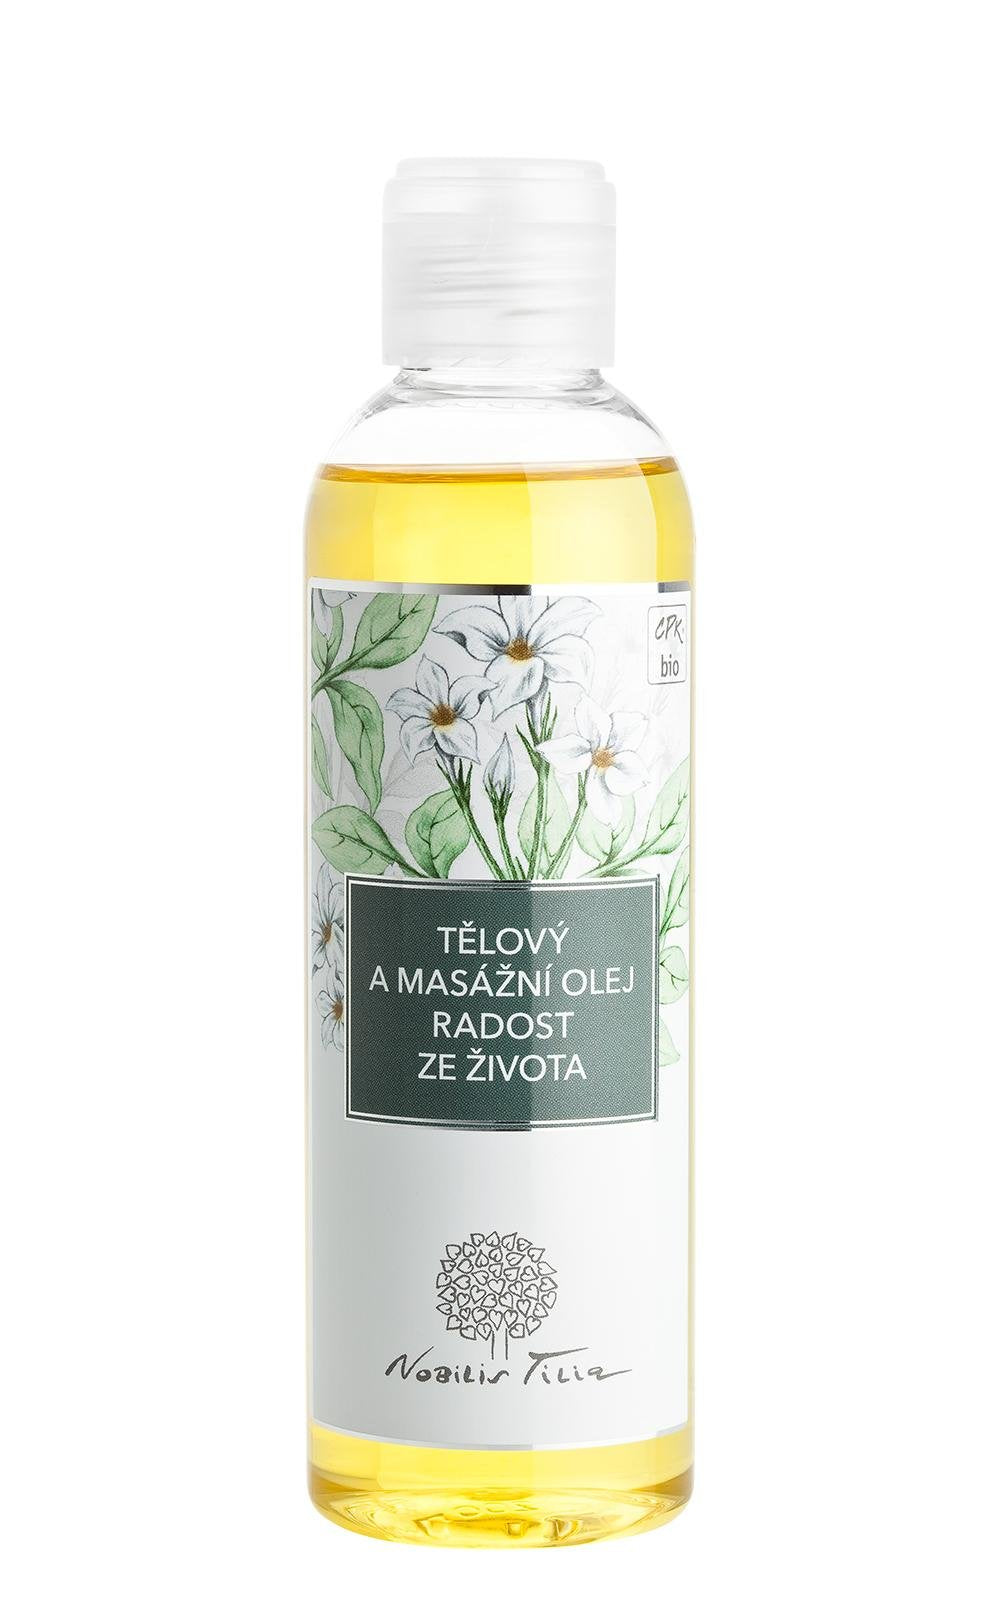 Nobilis Tilia Tělový a masážní olej Radost ze života BIO (200 ml)